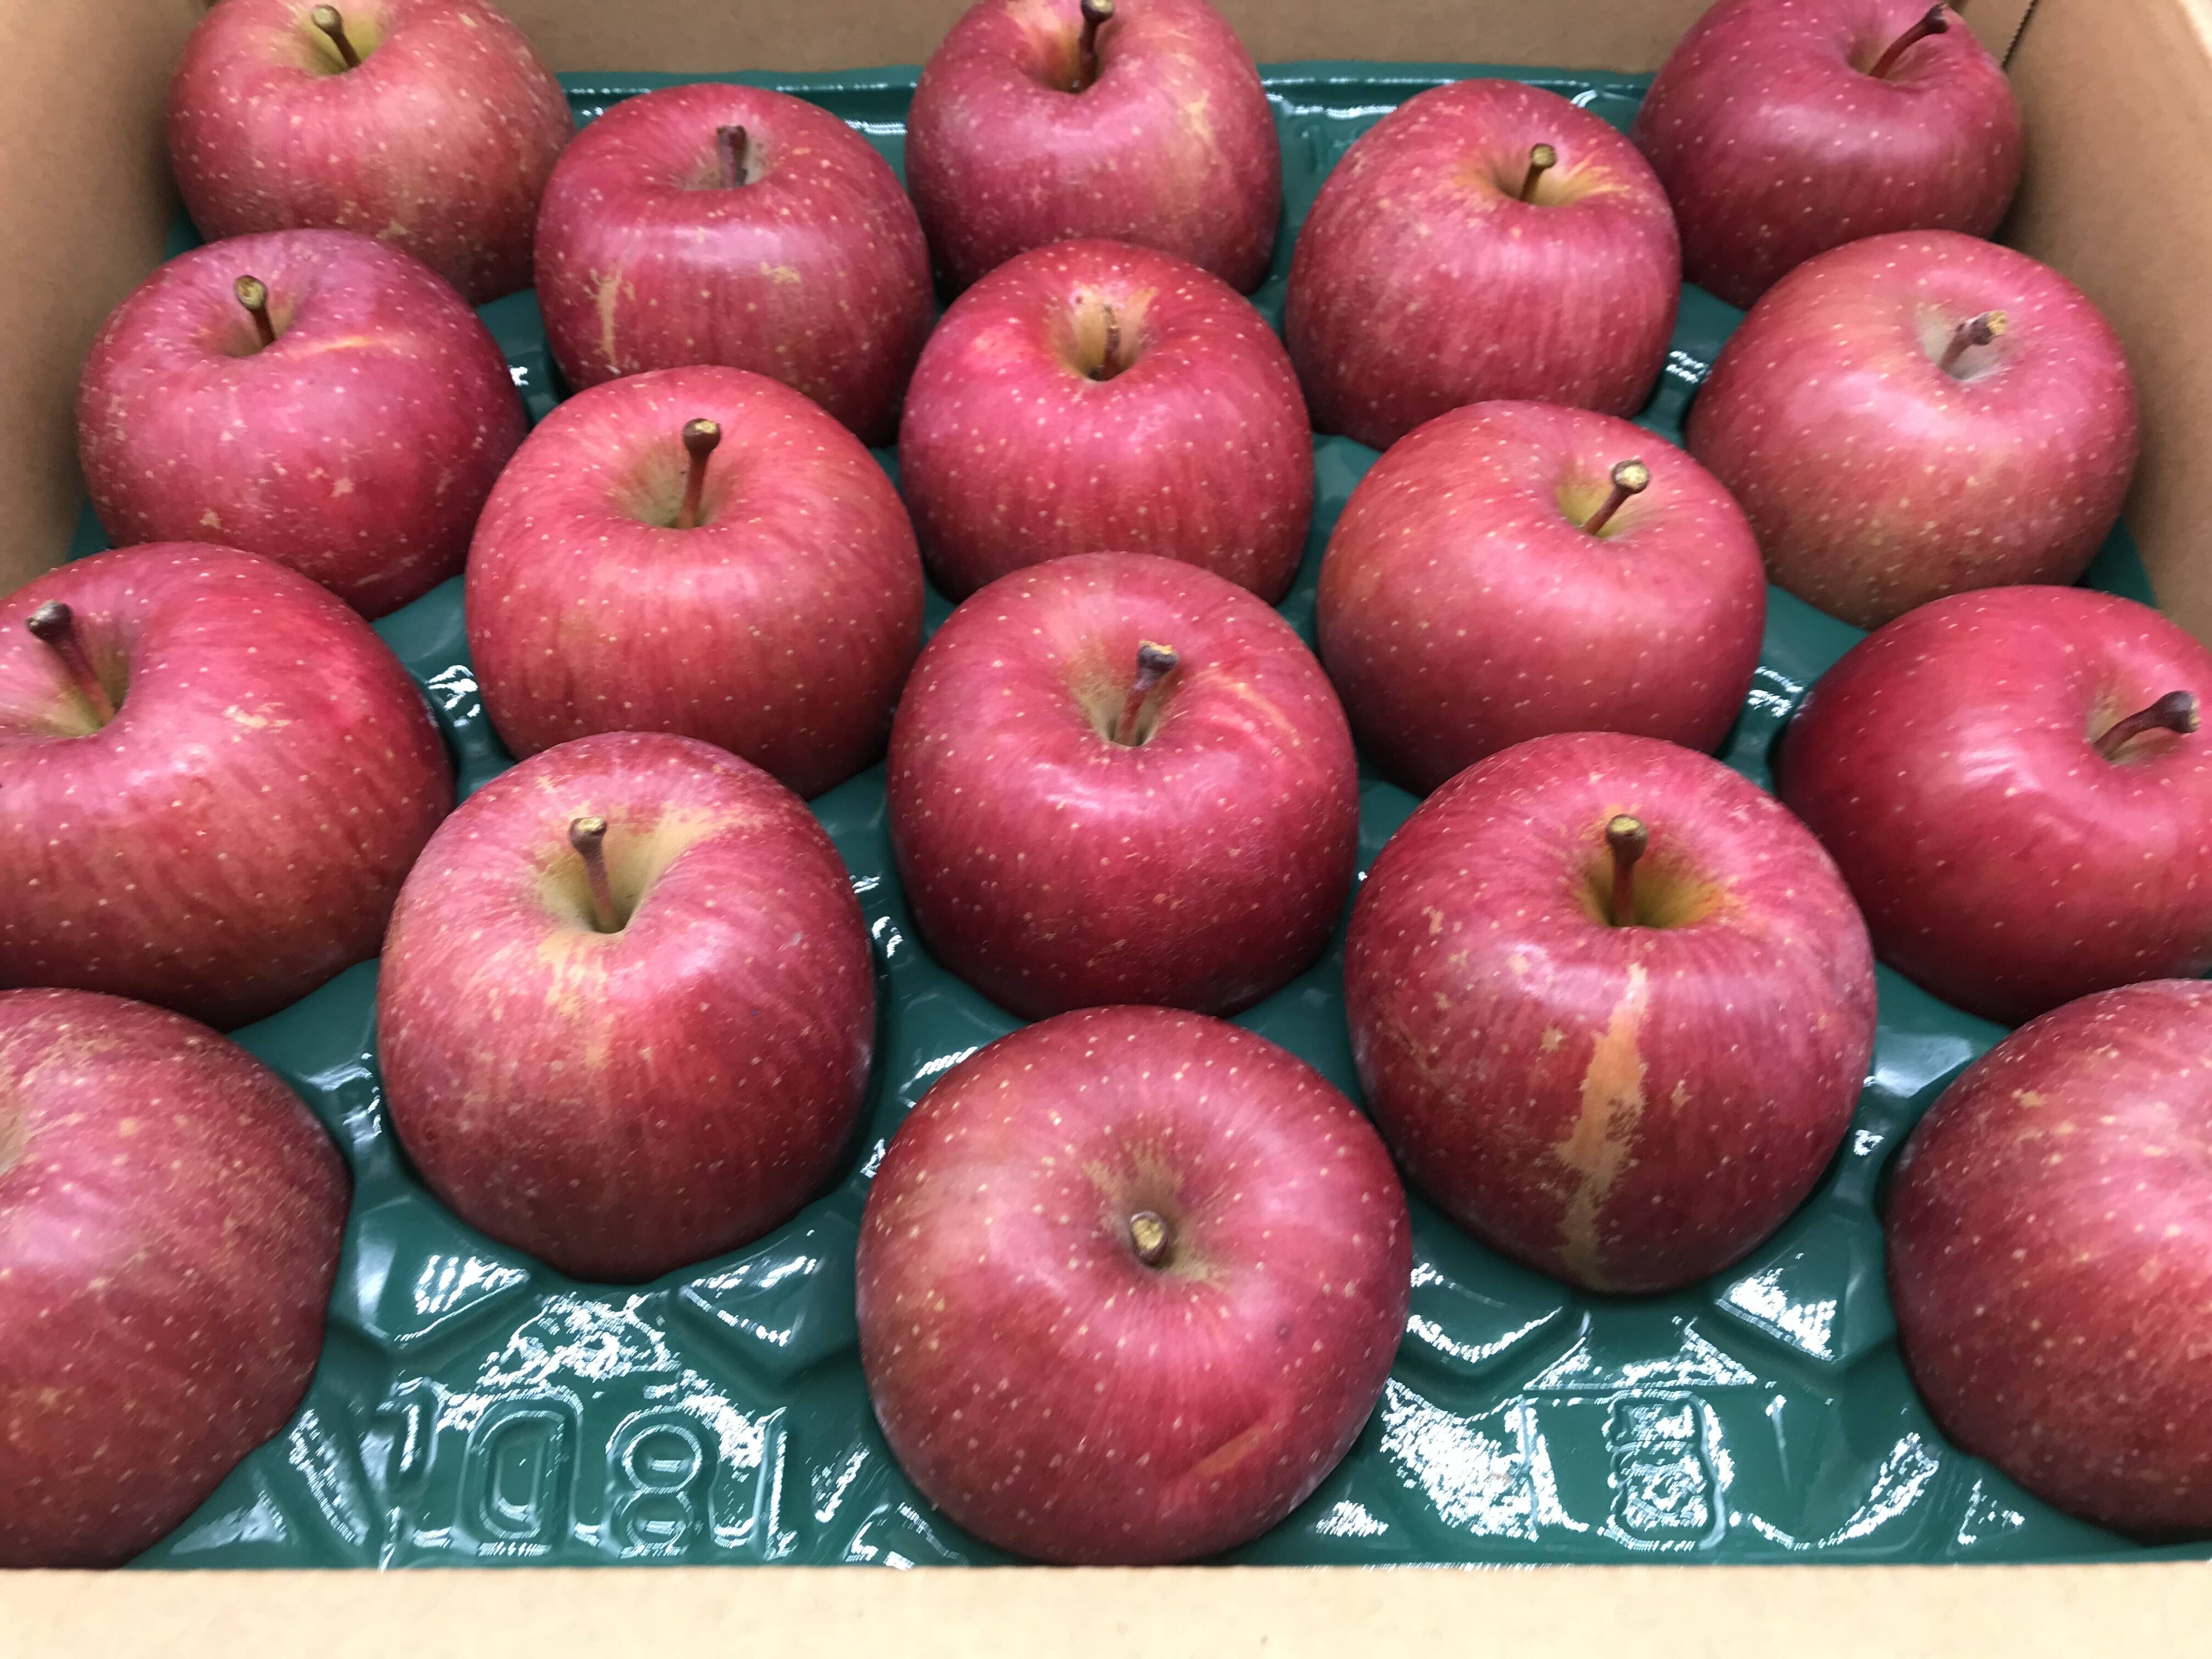 通常 1本タイプ 青森県産品 ふじりんご 貯蔵りんご 小玉13個入 常温配送 通販